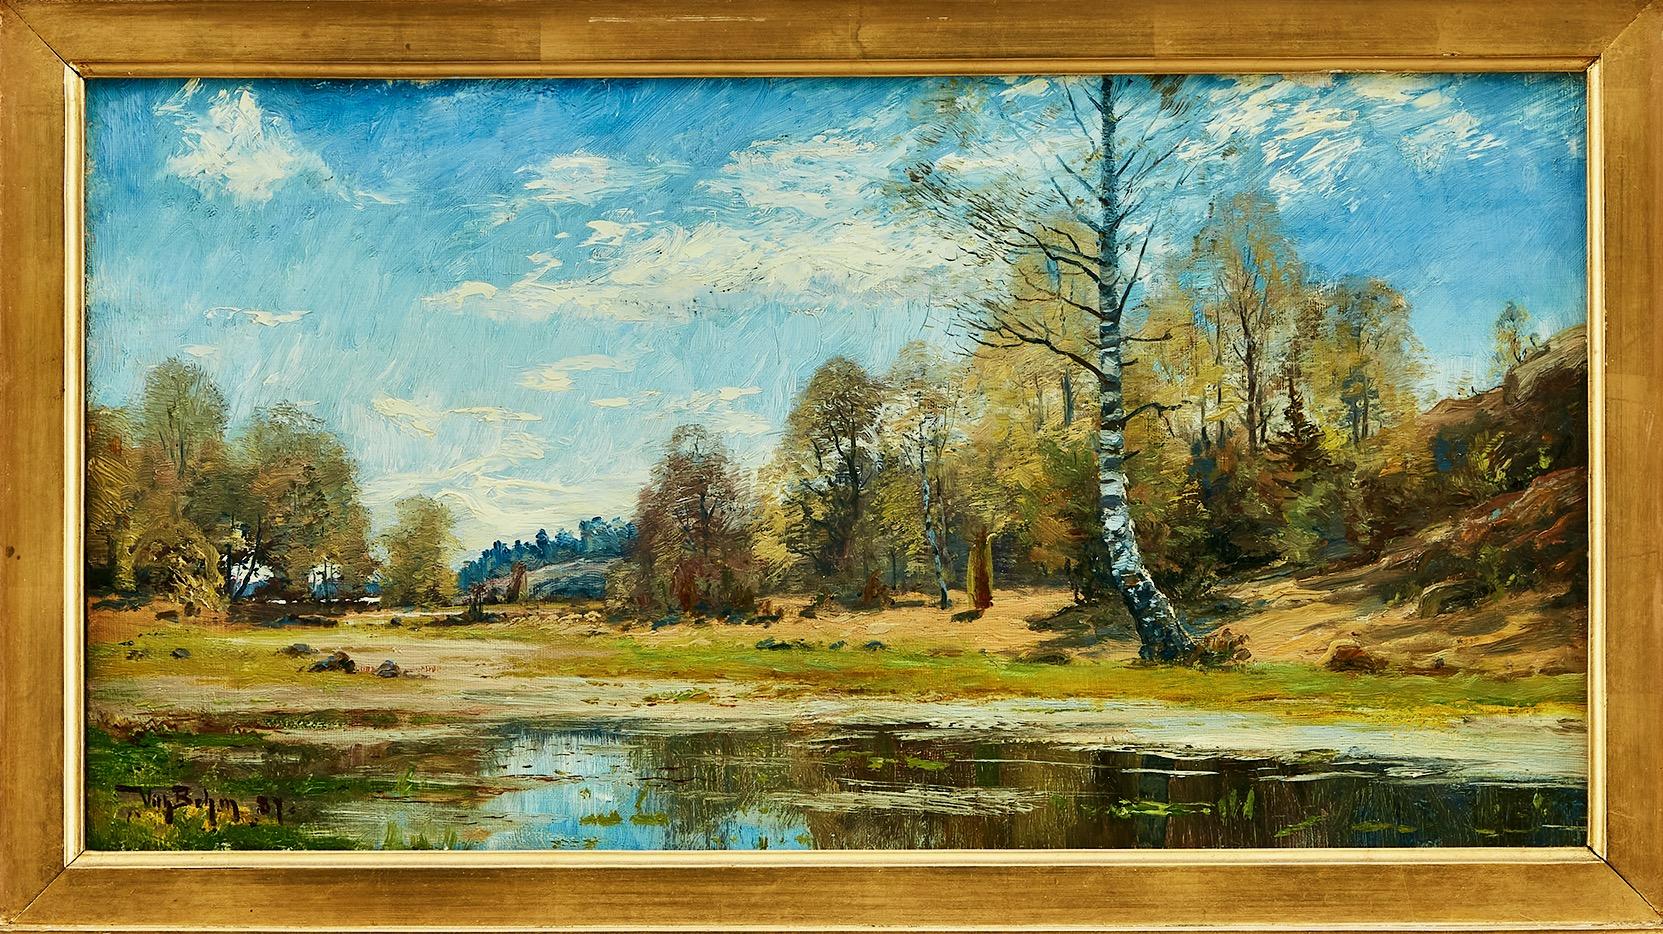 Landscape Painting WILHELM EMANUEL BEHM - Paysage avec lac, représentant l'automne. Huile sur toile. Peint en 1887